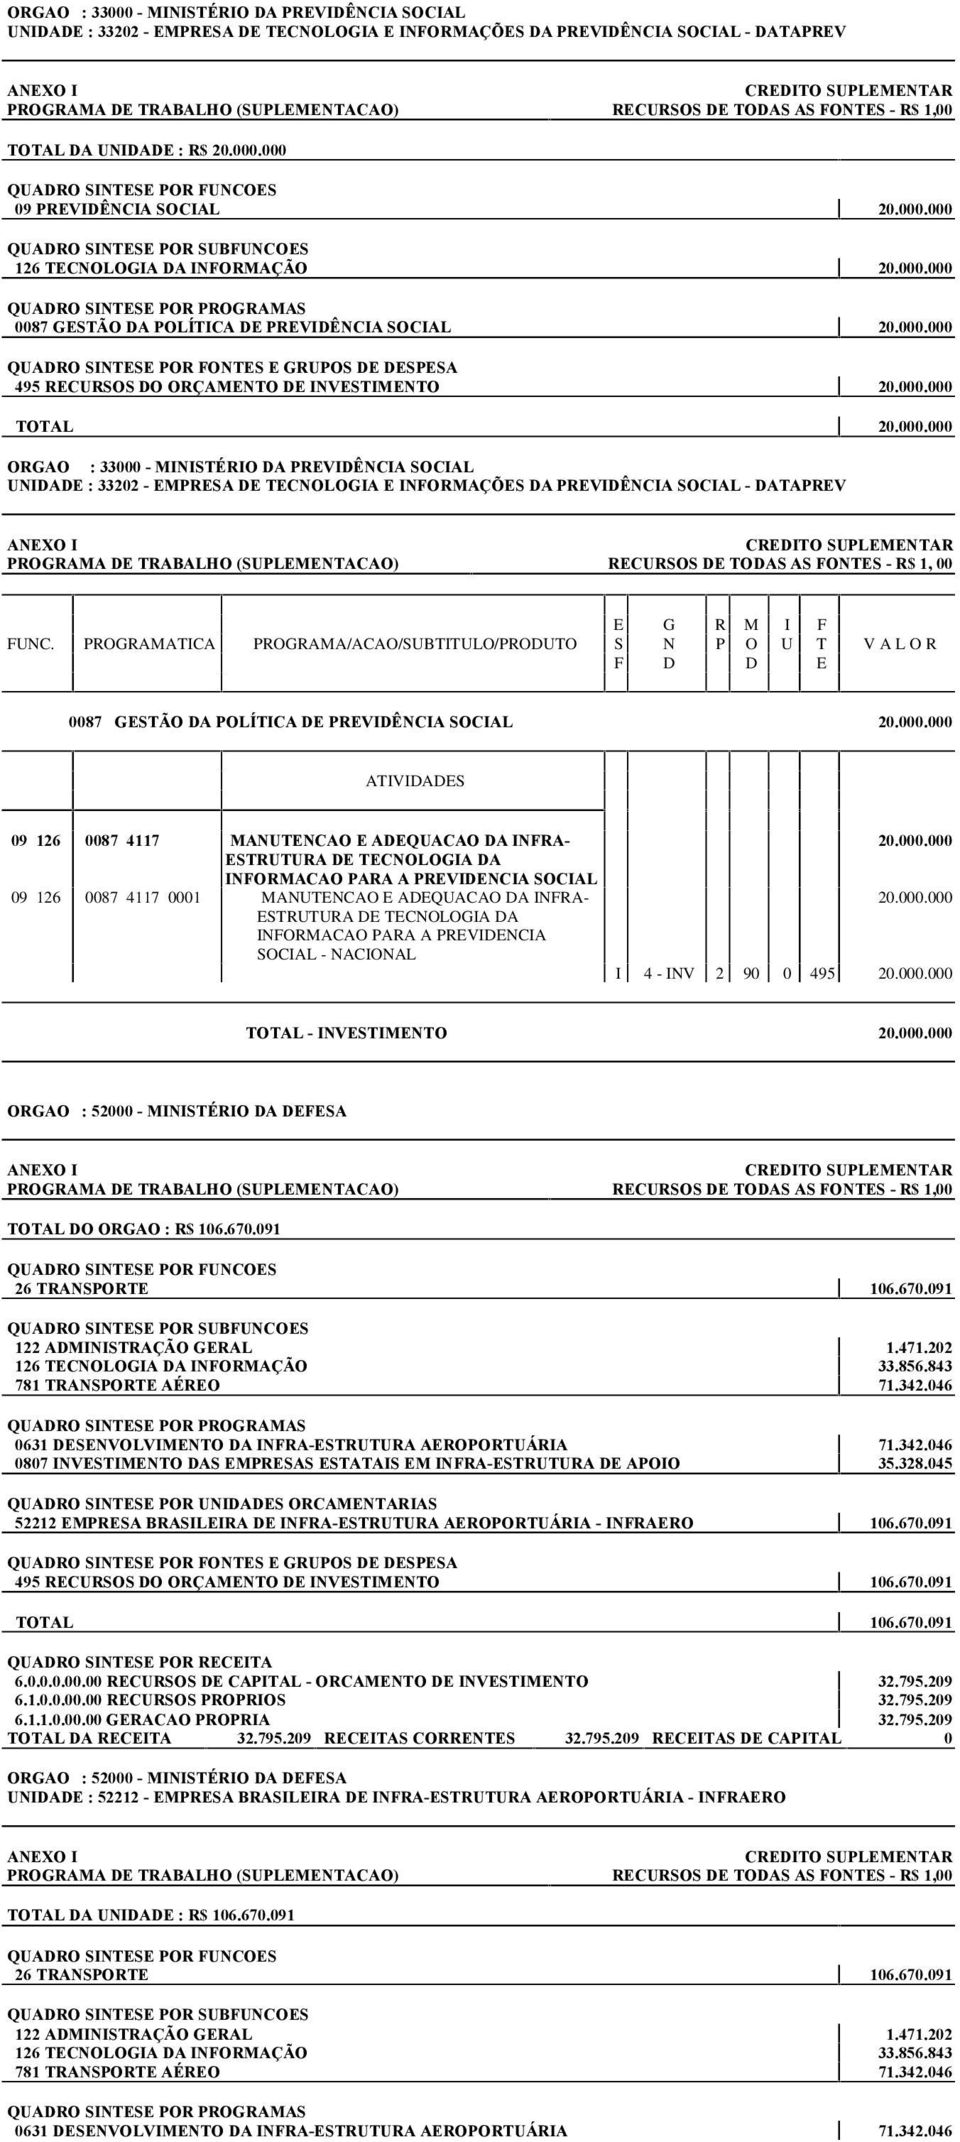 - EMPRESA DE TECNOLOGIA E INFORMAÇÕES DA PREVIDÊNCIA SOCIAL - DATAPREV PROGRAMA DE TRABALHO (SUPLEMENTACAO) RECURSOS DE TODAS AS FONTES - R$ 1, 00 0087 GESTÃO DA POLÍTICA DE PREVIDÊNCIA SOCIAL 20.000.